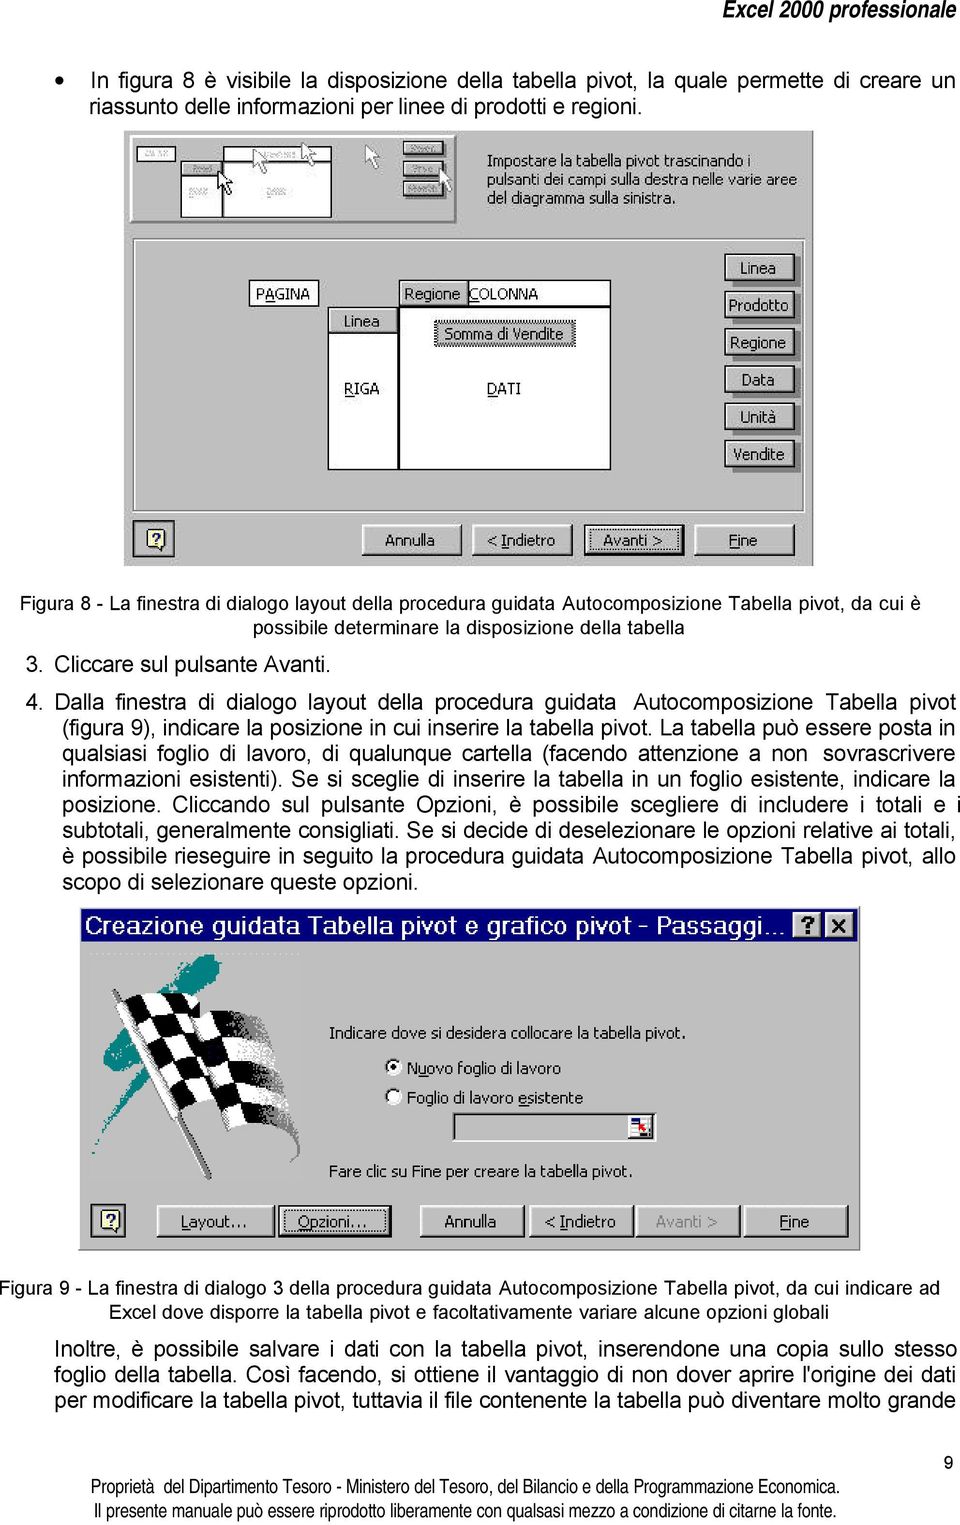 Dalla finestra di dialogo layout della procedura guidata Autocomposizione Tabella pivot (figura 9), indicare la posizione in cui inserire la tabella pivot.